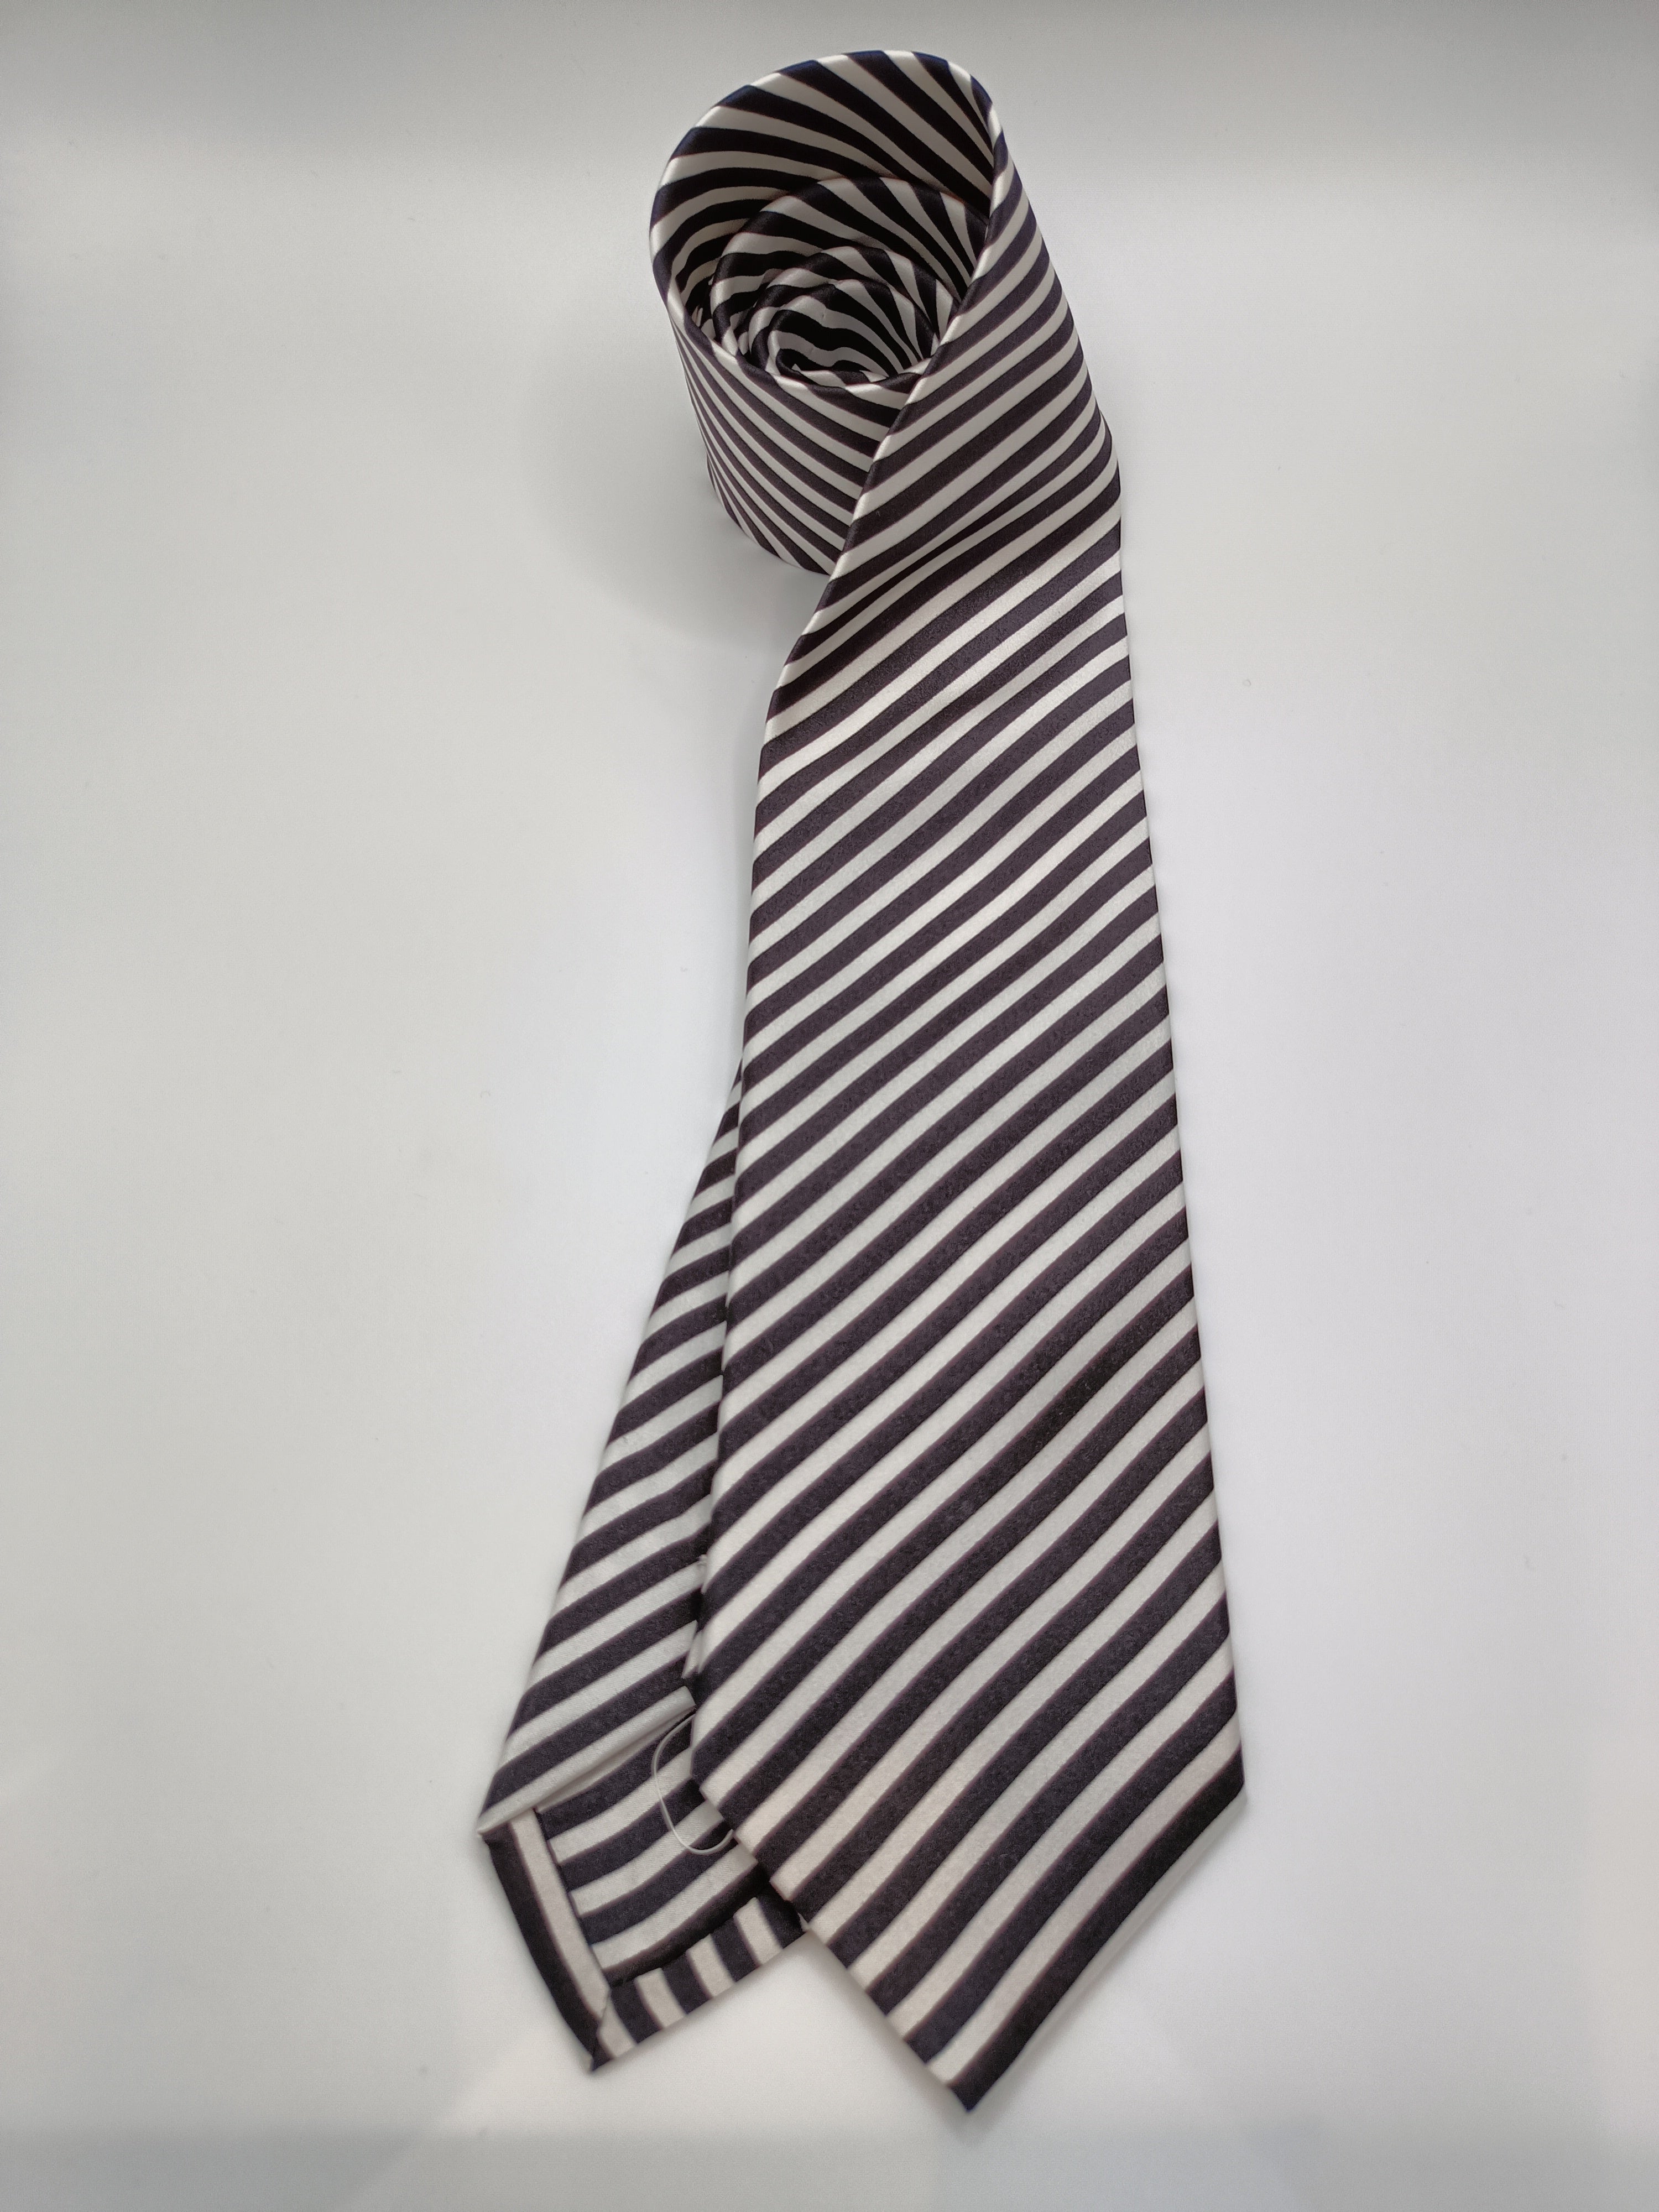 B&amp;W Striped Tie